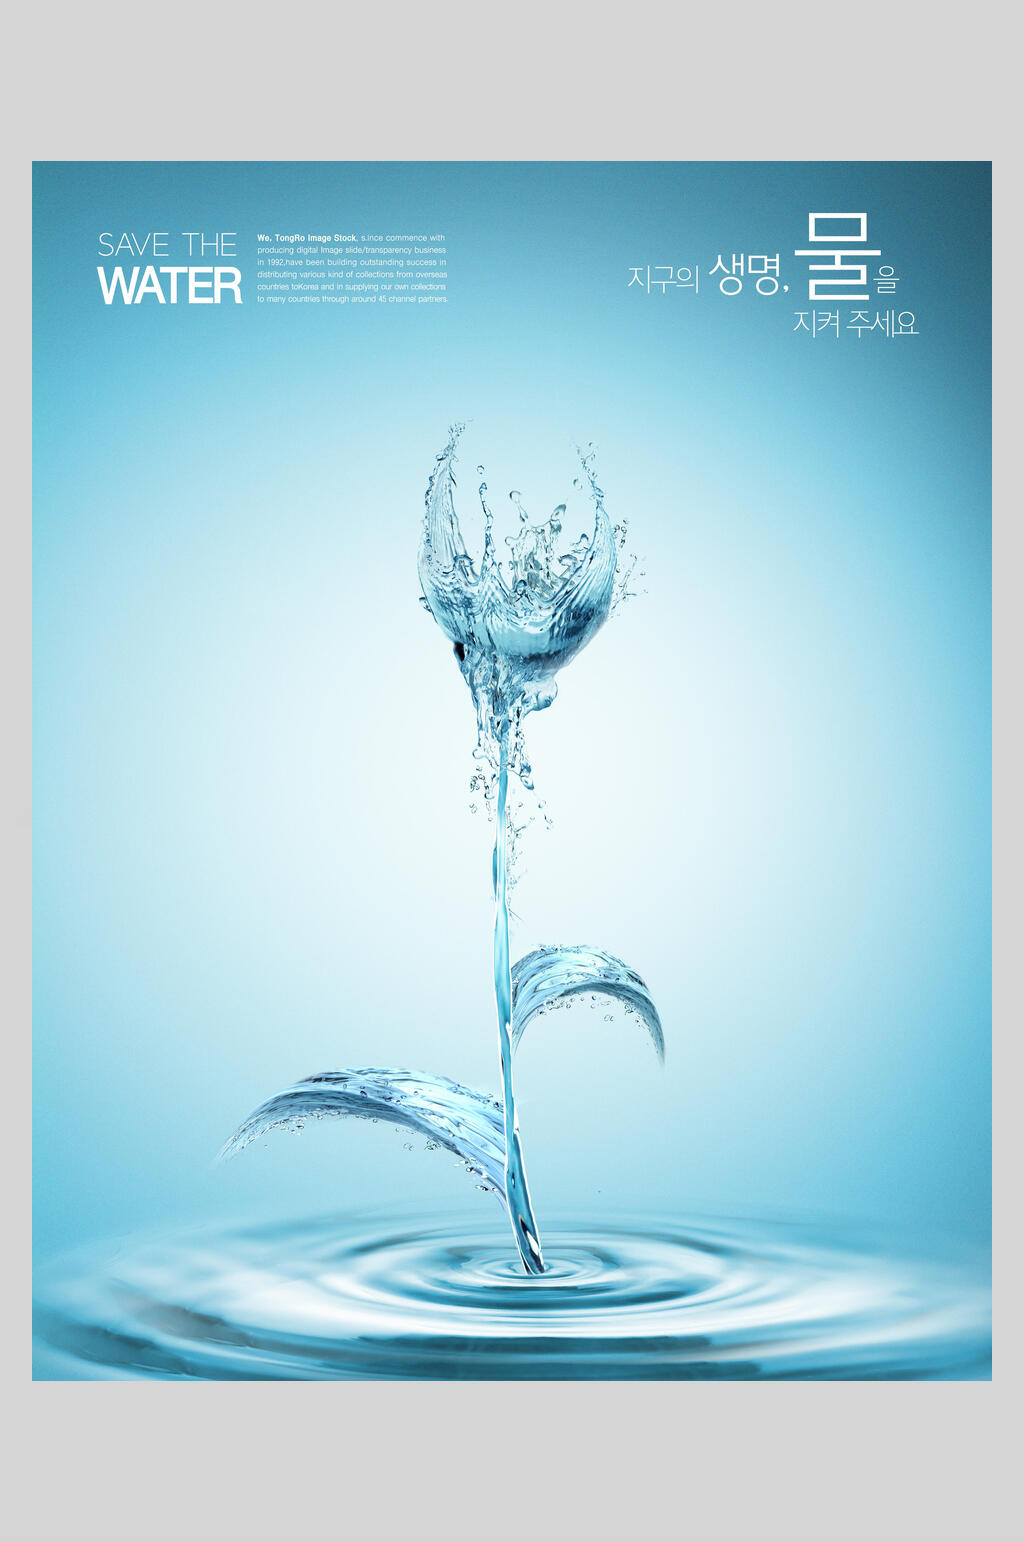 保护水资源环保人人有责公益海报素材